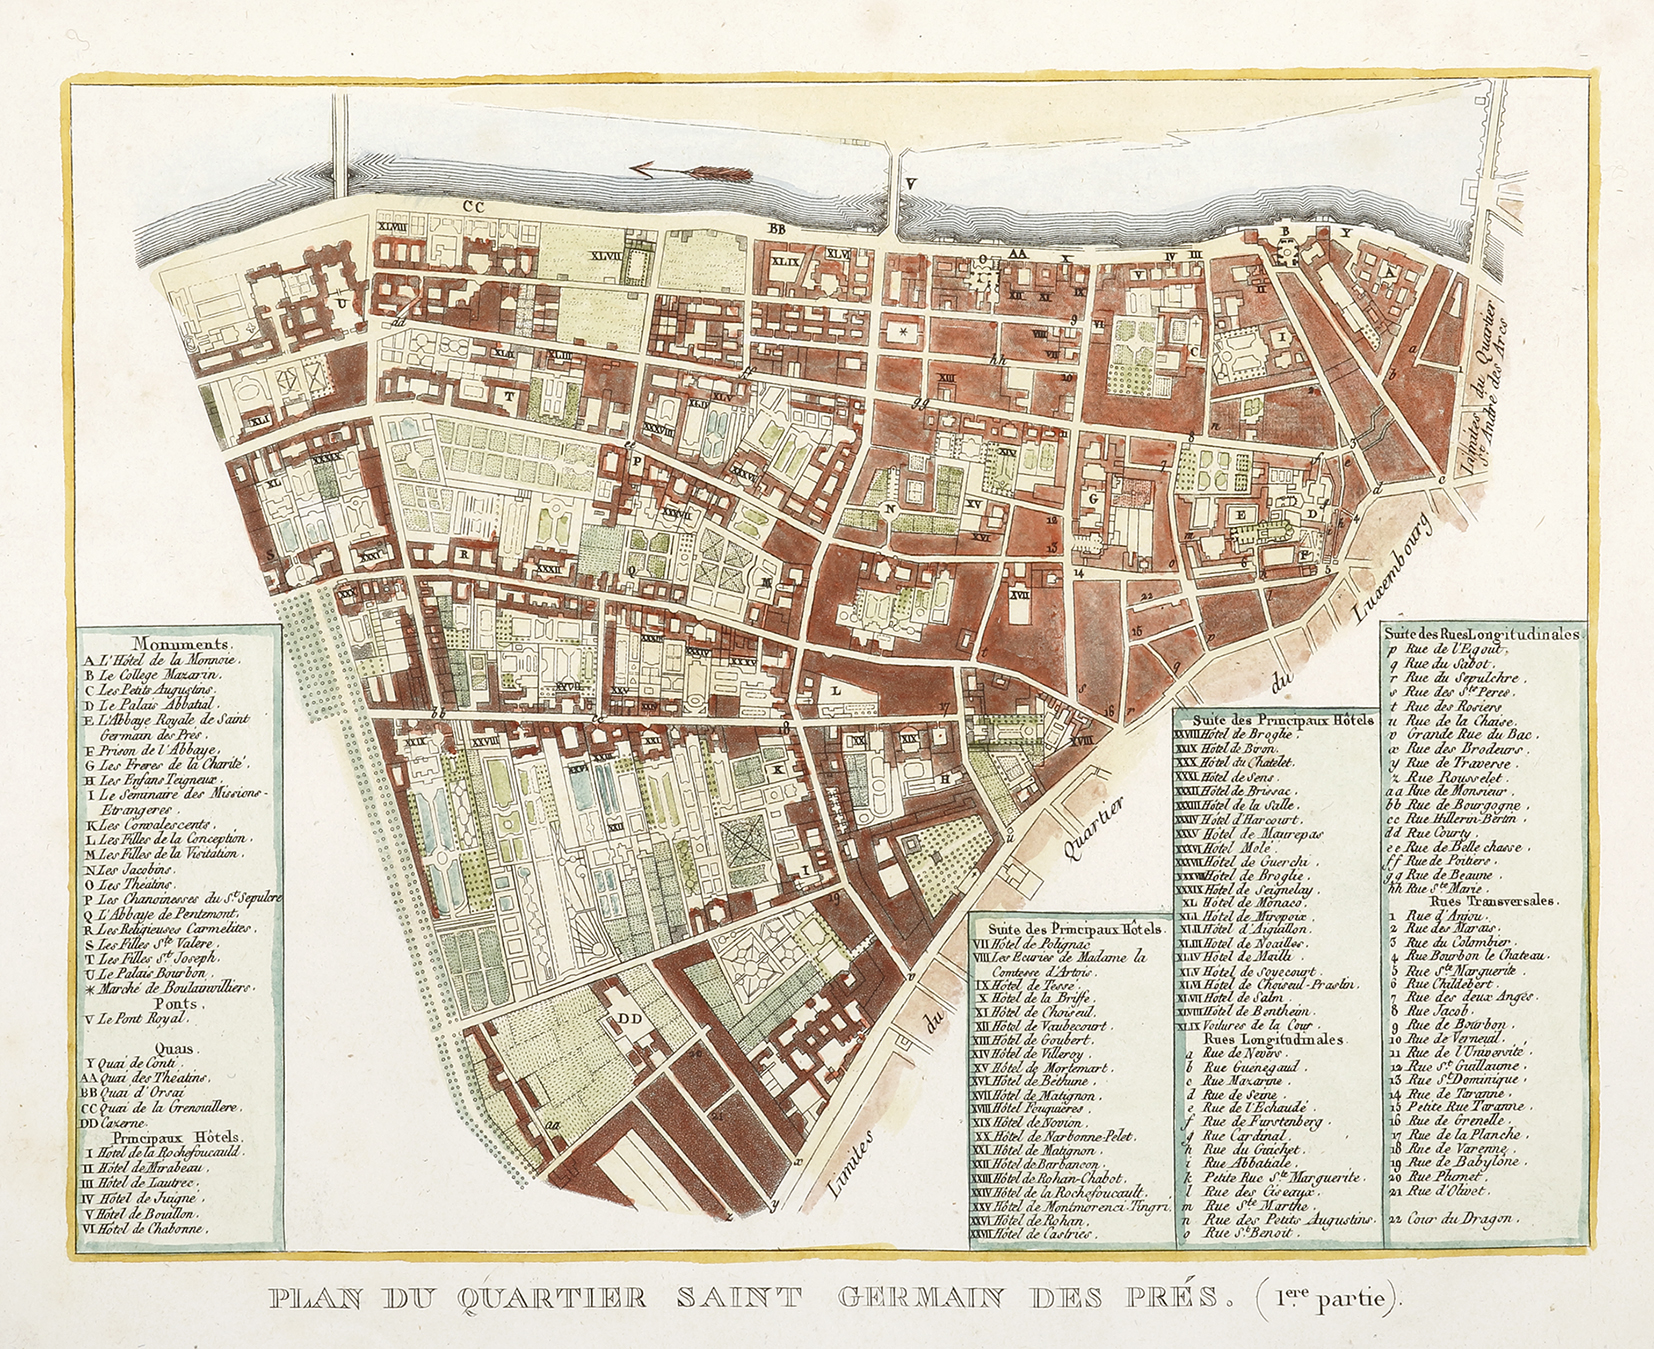 Plan du Quartier Saint Germain des pres . (1ere partie) - Antique Map from 1809